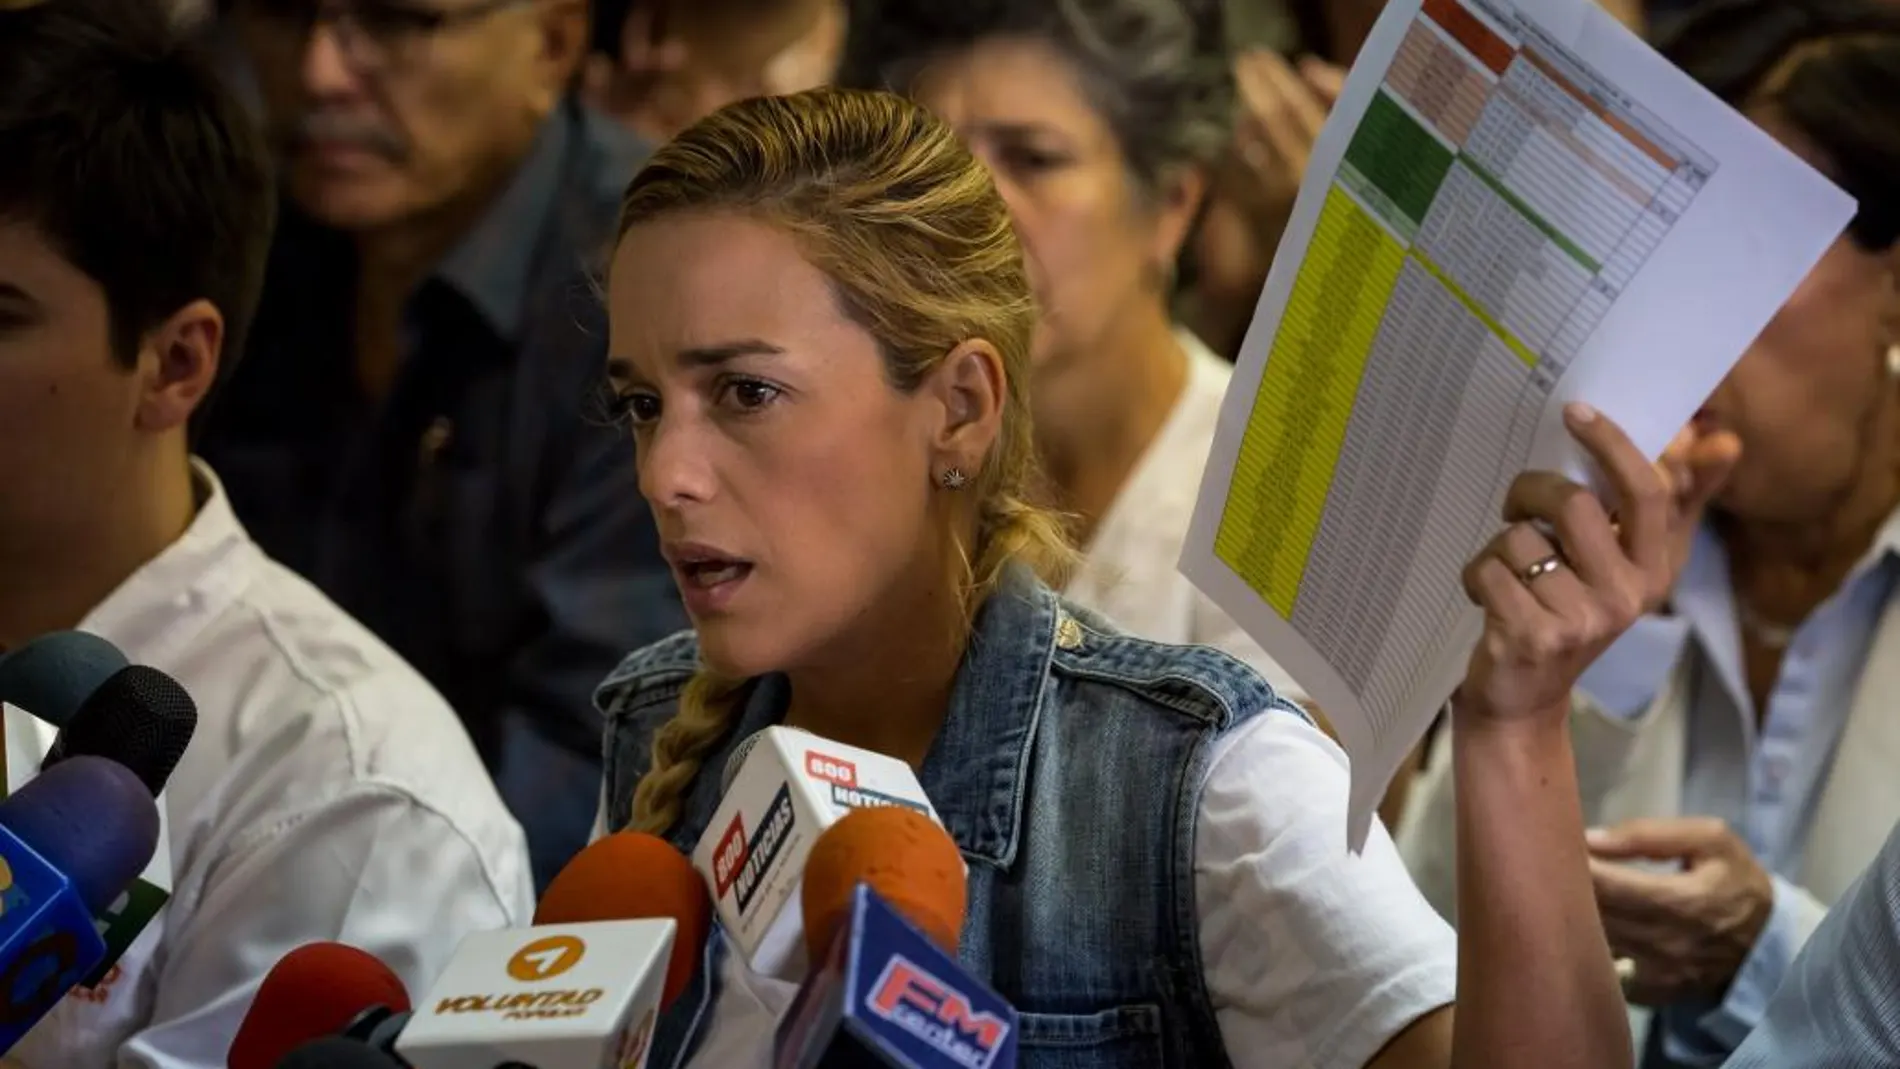 Lilian Tintori participa en una rueda de prensa este miércoles 2 de noviembre de 2016, en Caracas (Venezuela)